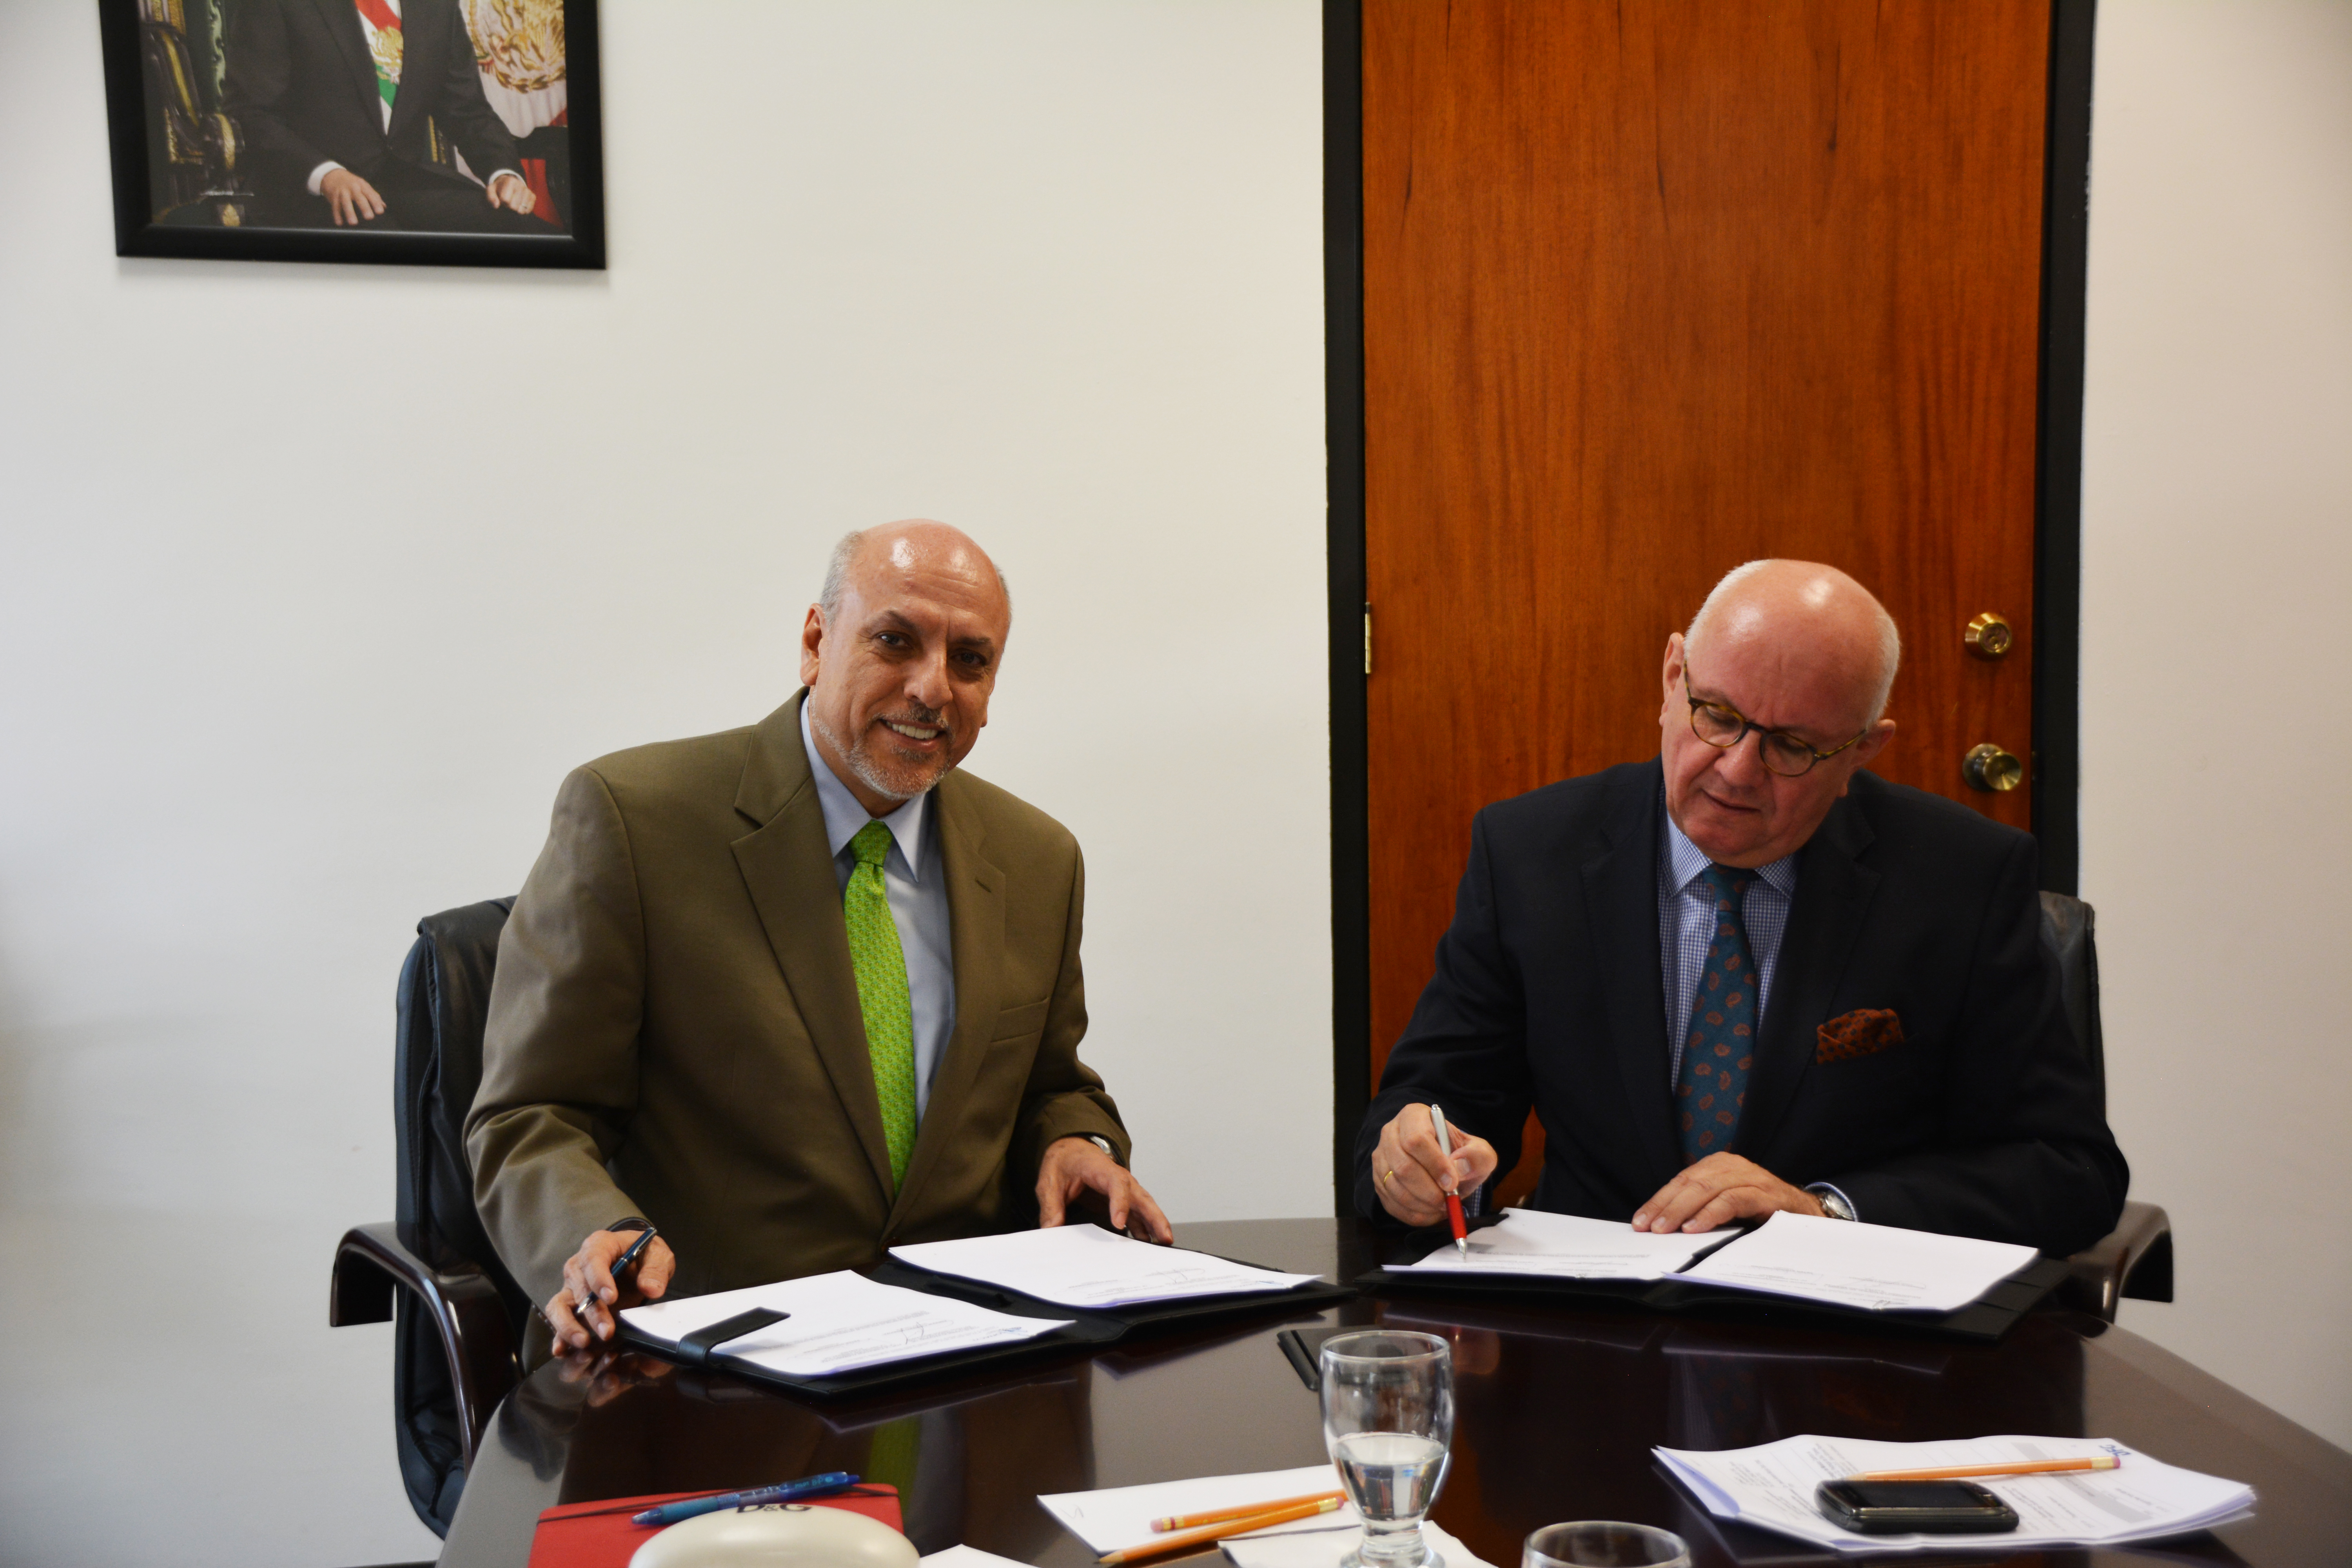 Unterzeichnung des neuen Abkommens mit der Partnerorganisation CONACYT in Mexiko durch den Präsidenten der DFG, Prof. Peter Strohschneider und den Generaldirektor des CONACYT, Prof. Enrique Cabrero Mendoza